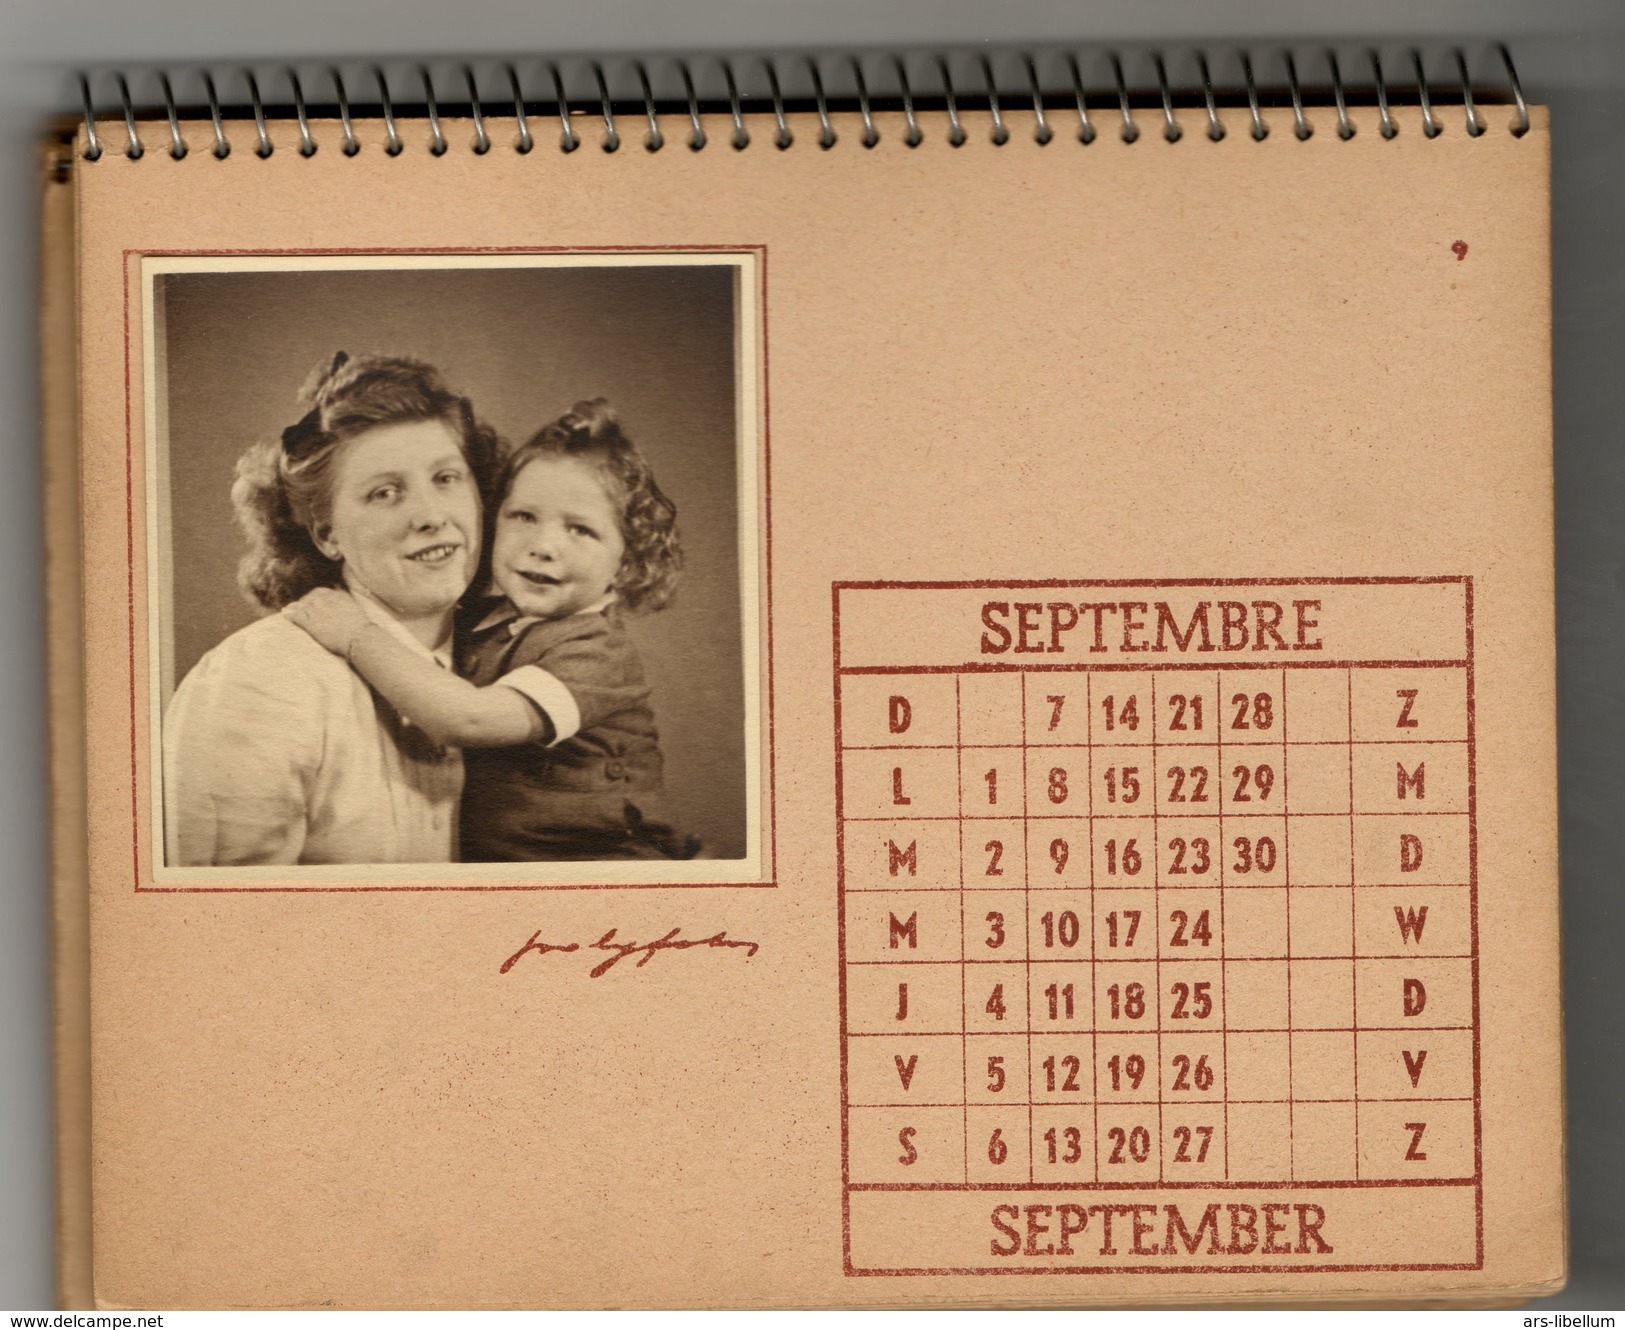 1947 / CALENDRIER personnalisé / Polyfoto Belgique / photos originales / kalender / femme / woman / child / enfant